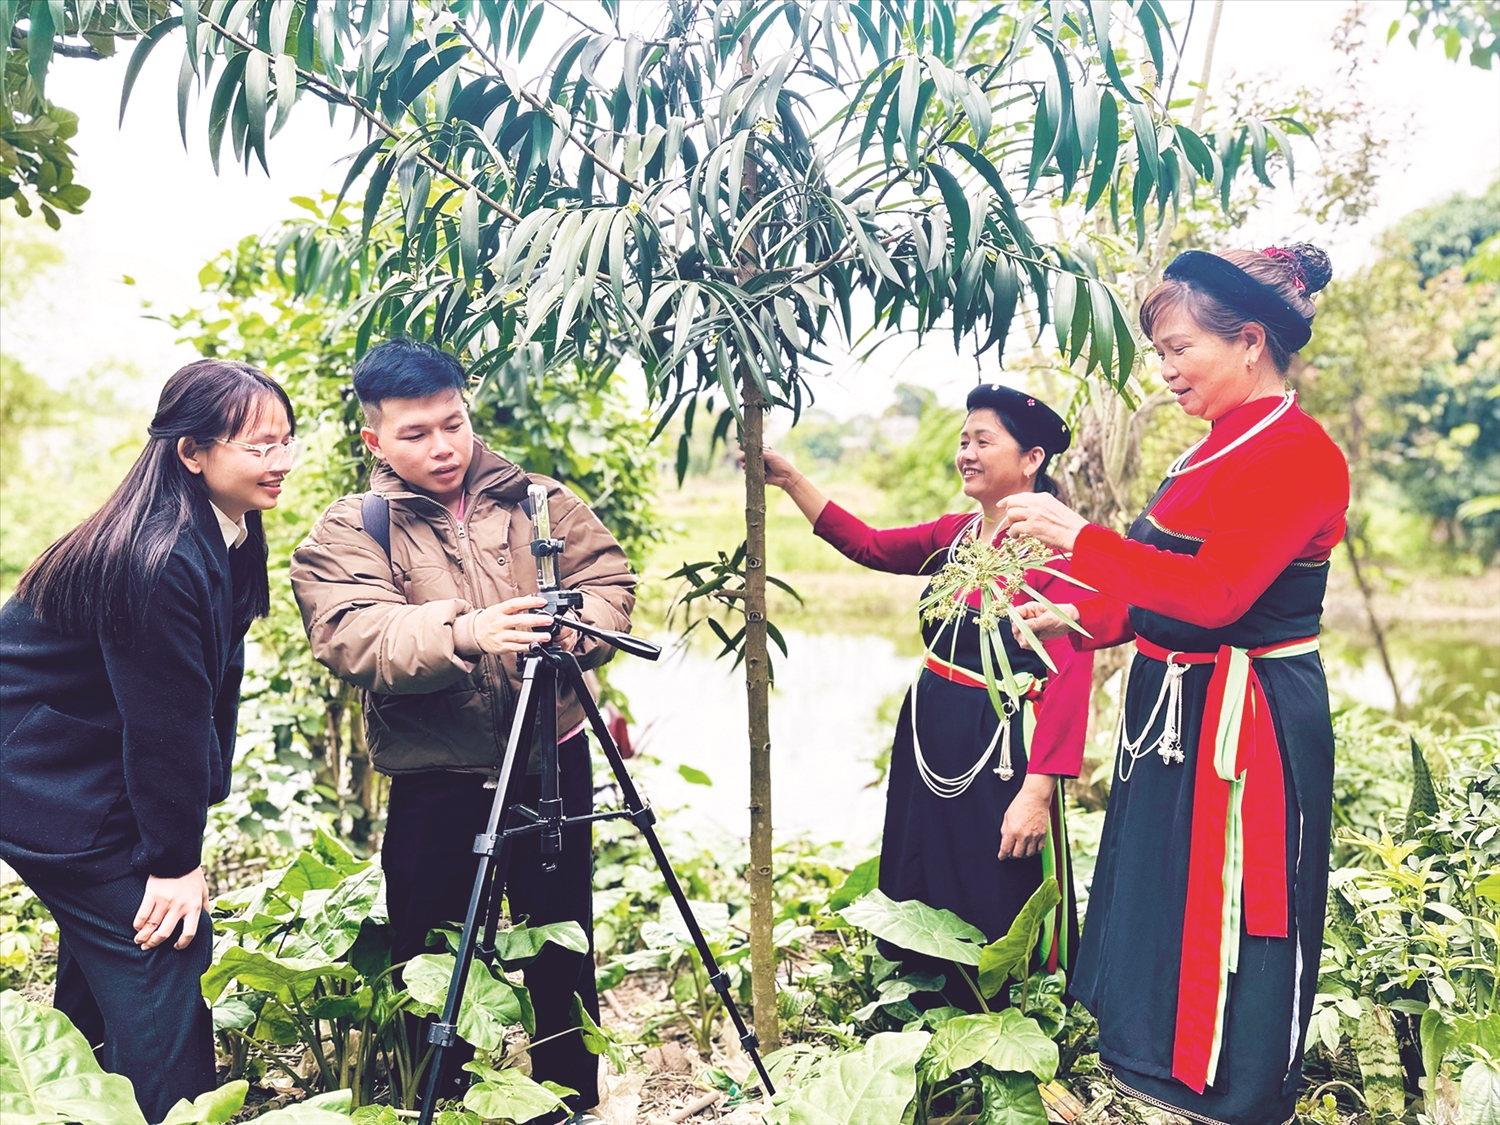 Lương y Phan Thị Lai và Âu Thị Sinh, thôn Đoàn Kết, xã Đội Bình, huyện Yên Sơn thực hiện video ngắn giới thiệu về các bài thuốc dân tộc Cao Lan.